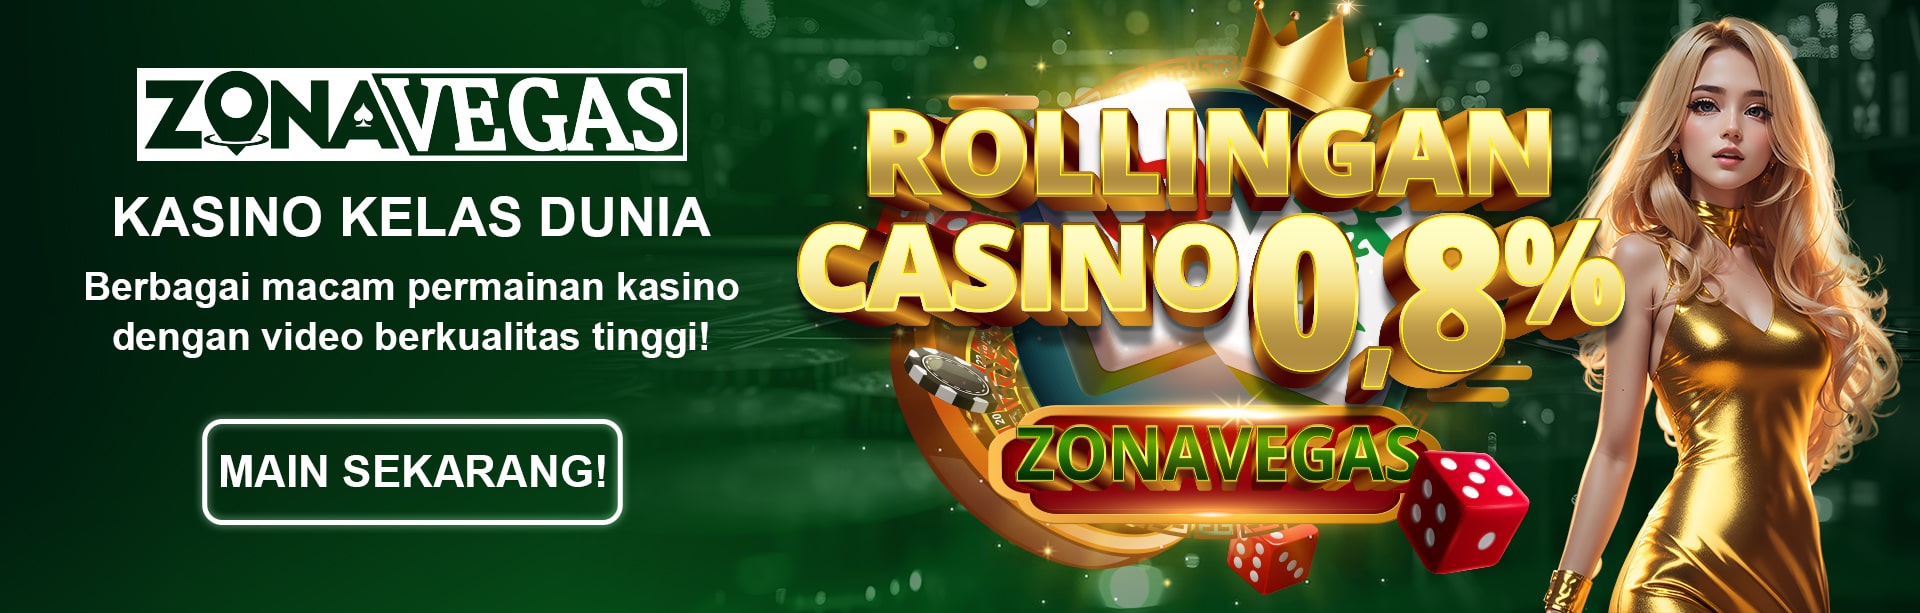 Bonus Cashback Rollingan Casino Zonavegas